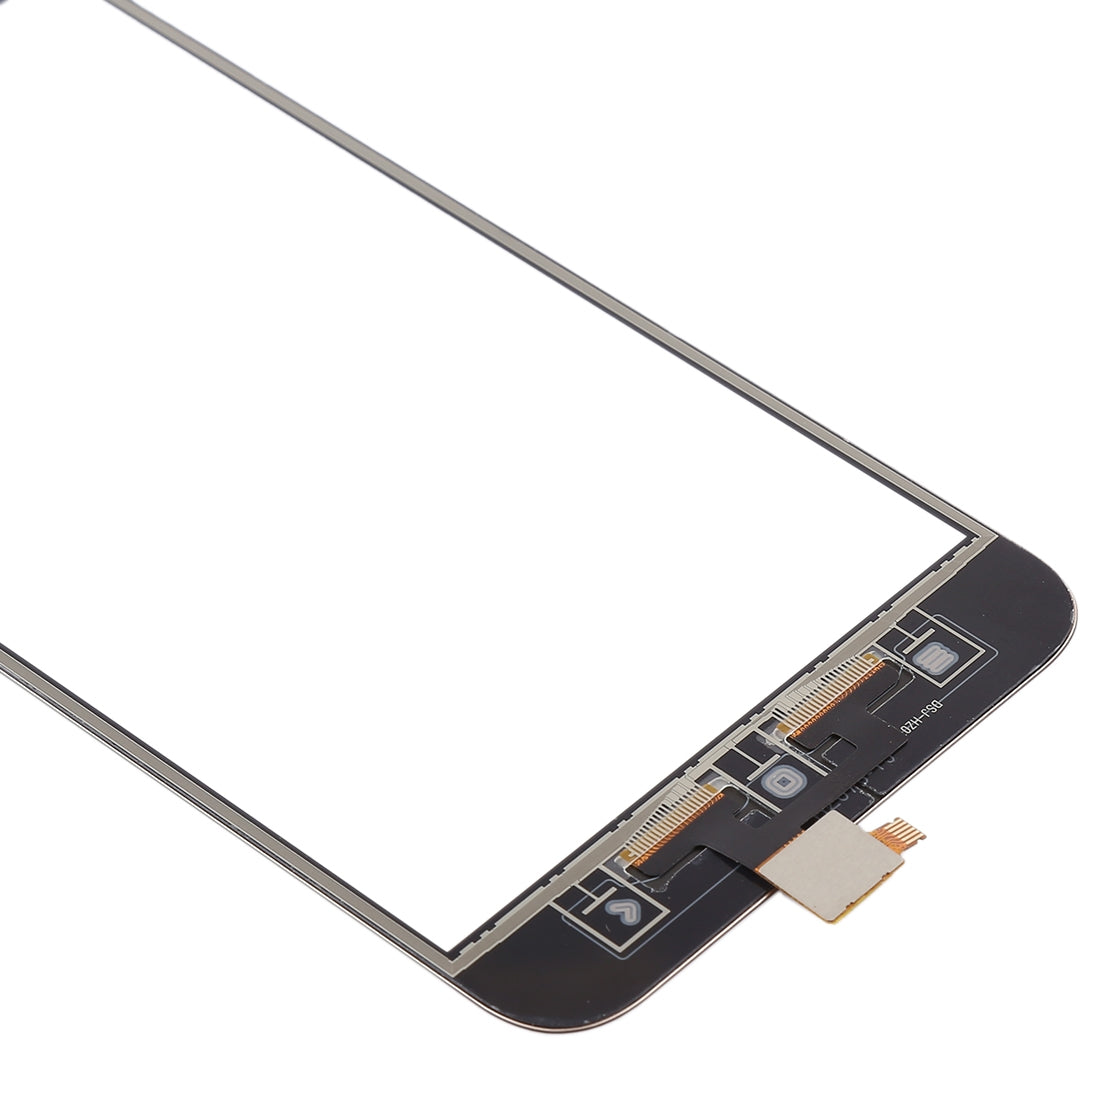 Touch Screen Digitizer Xiaomi Mi 5X / A1 Gold